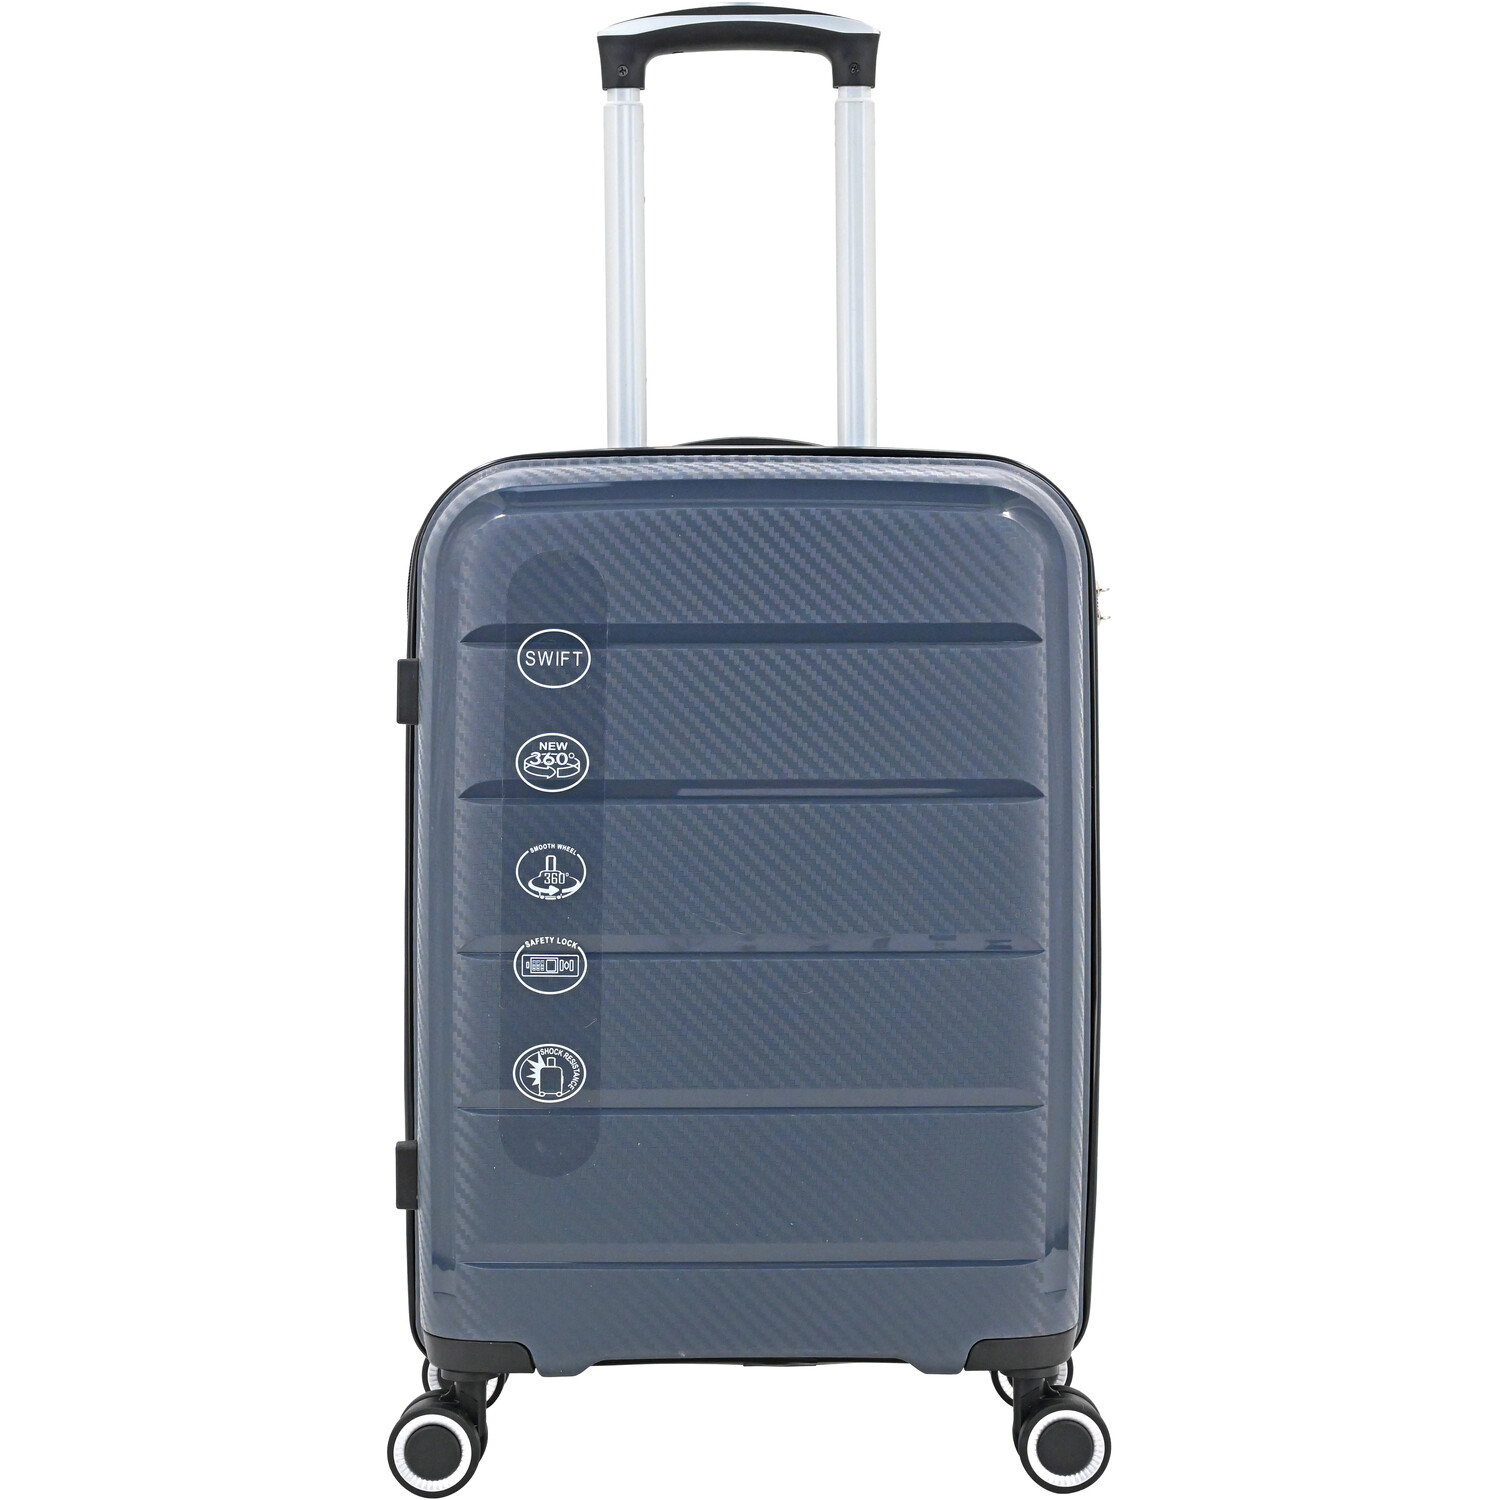 Swift Discovery Luggage Case - Grey / Large Case Image 1